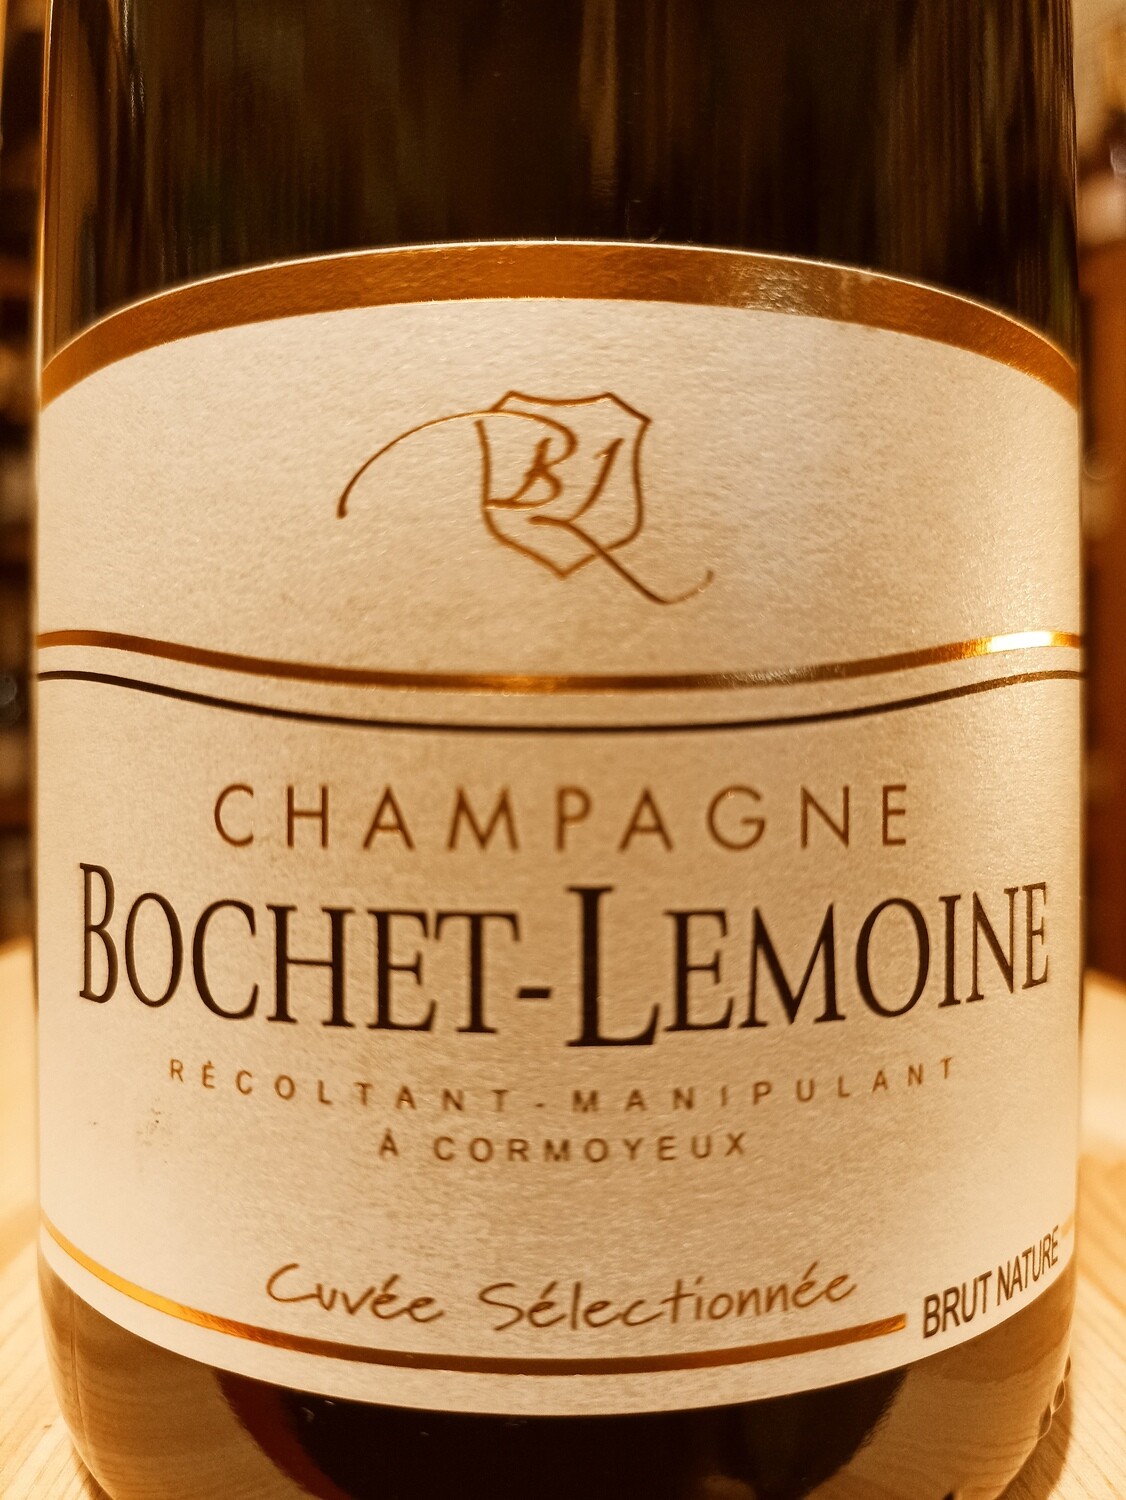 Champagne Bochet-Lemoine Brut Nature s.a.